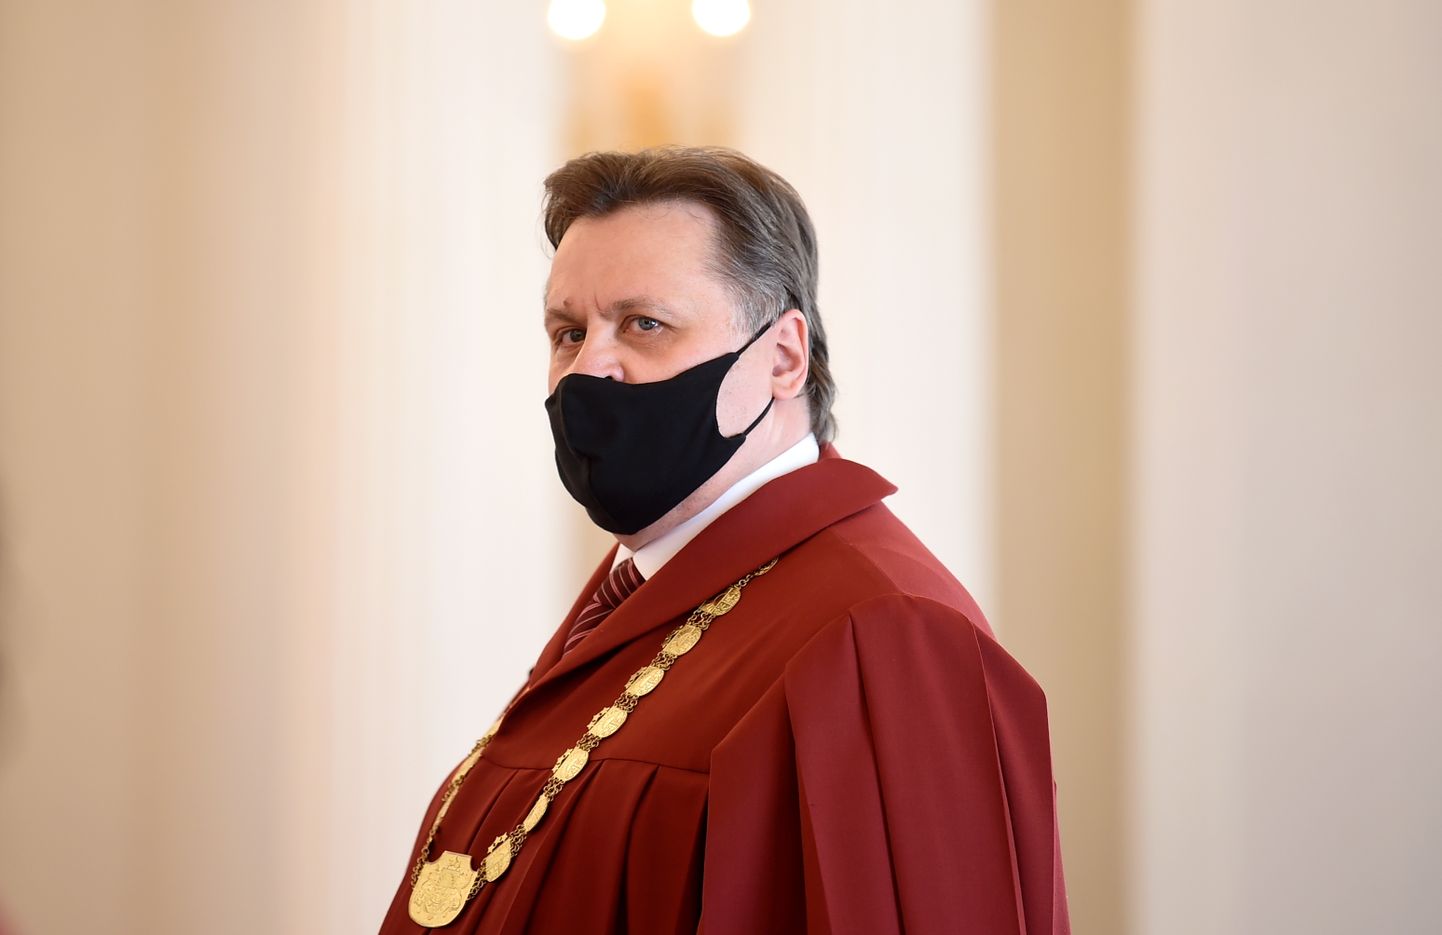 Augstākās tiesas priekšsēdētājs Aigars Strupišs piedalās Augstākās tiesas tiesnese Kristīnes Zīles svinīgajā tiesnešu zvēresta nodošanas ceremonijā Valsts prezidentam Rīgas pilī.